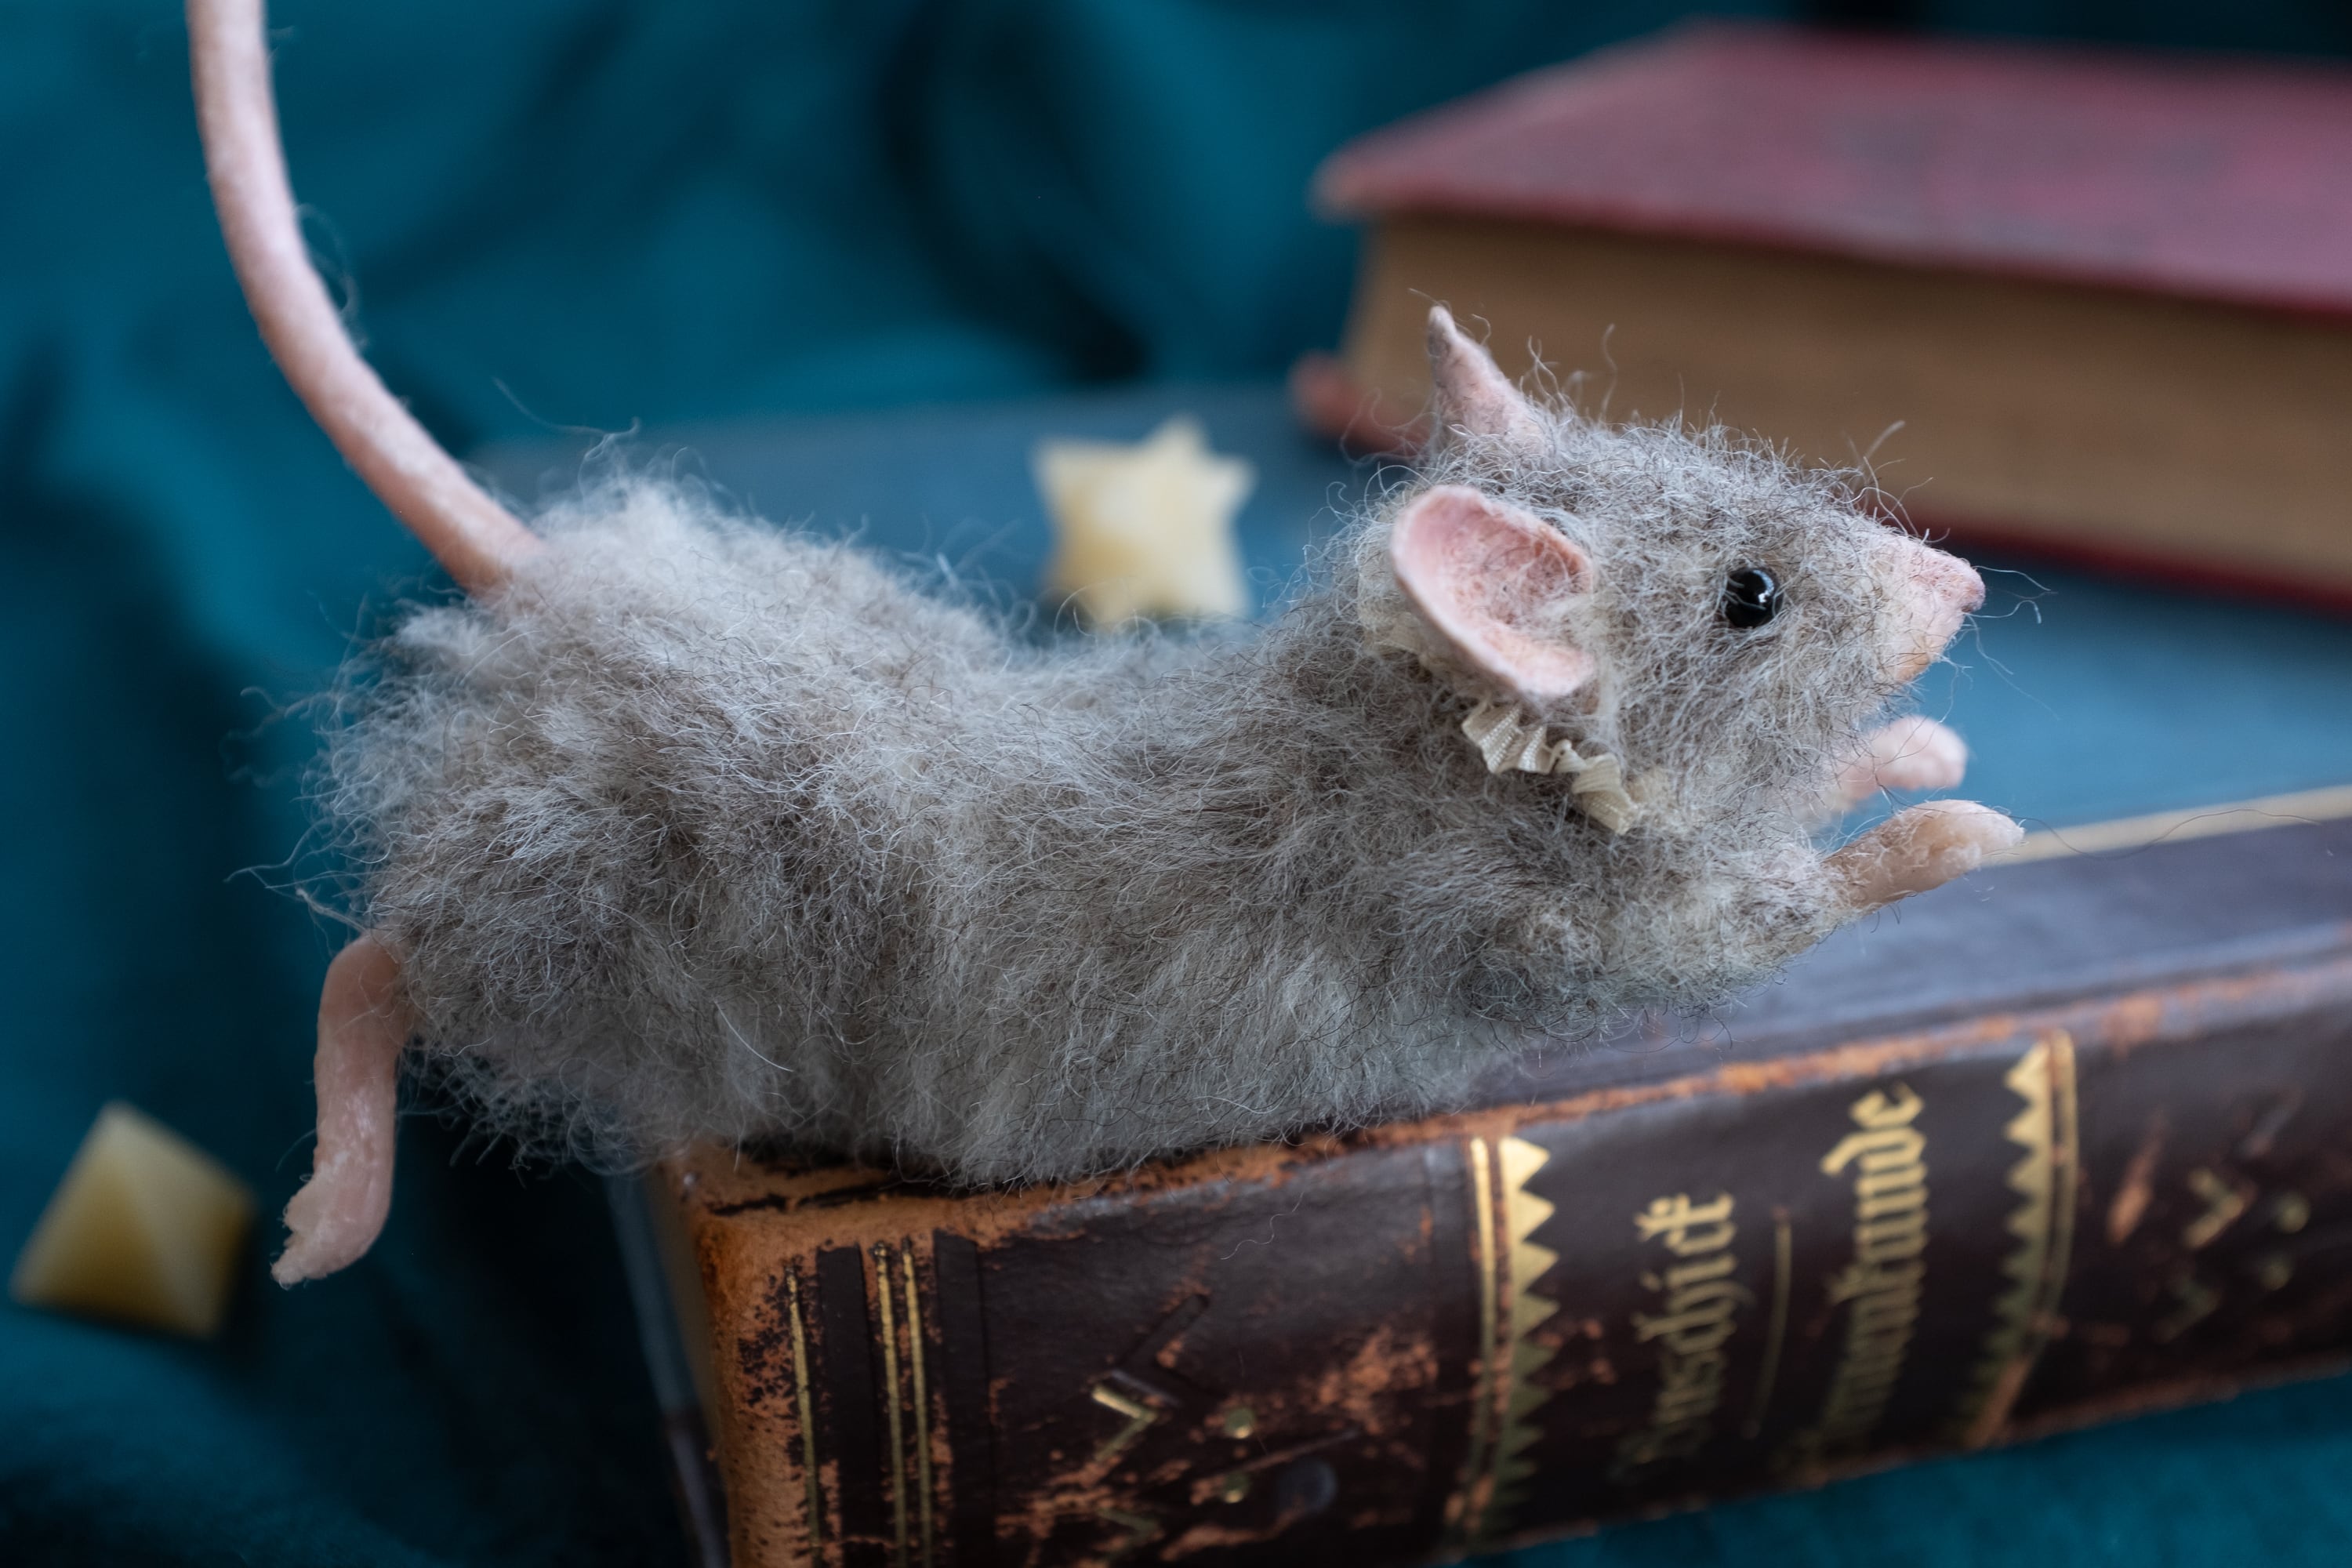 マウス ネズミ 骨格標本 - 置物